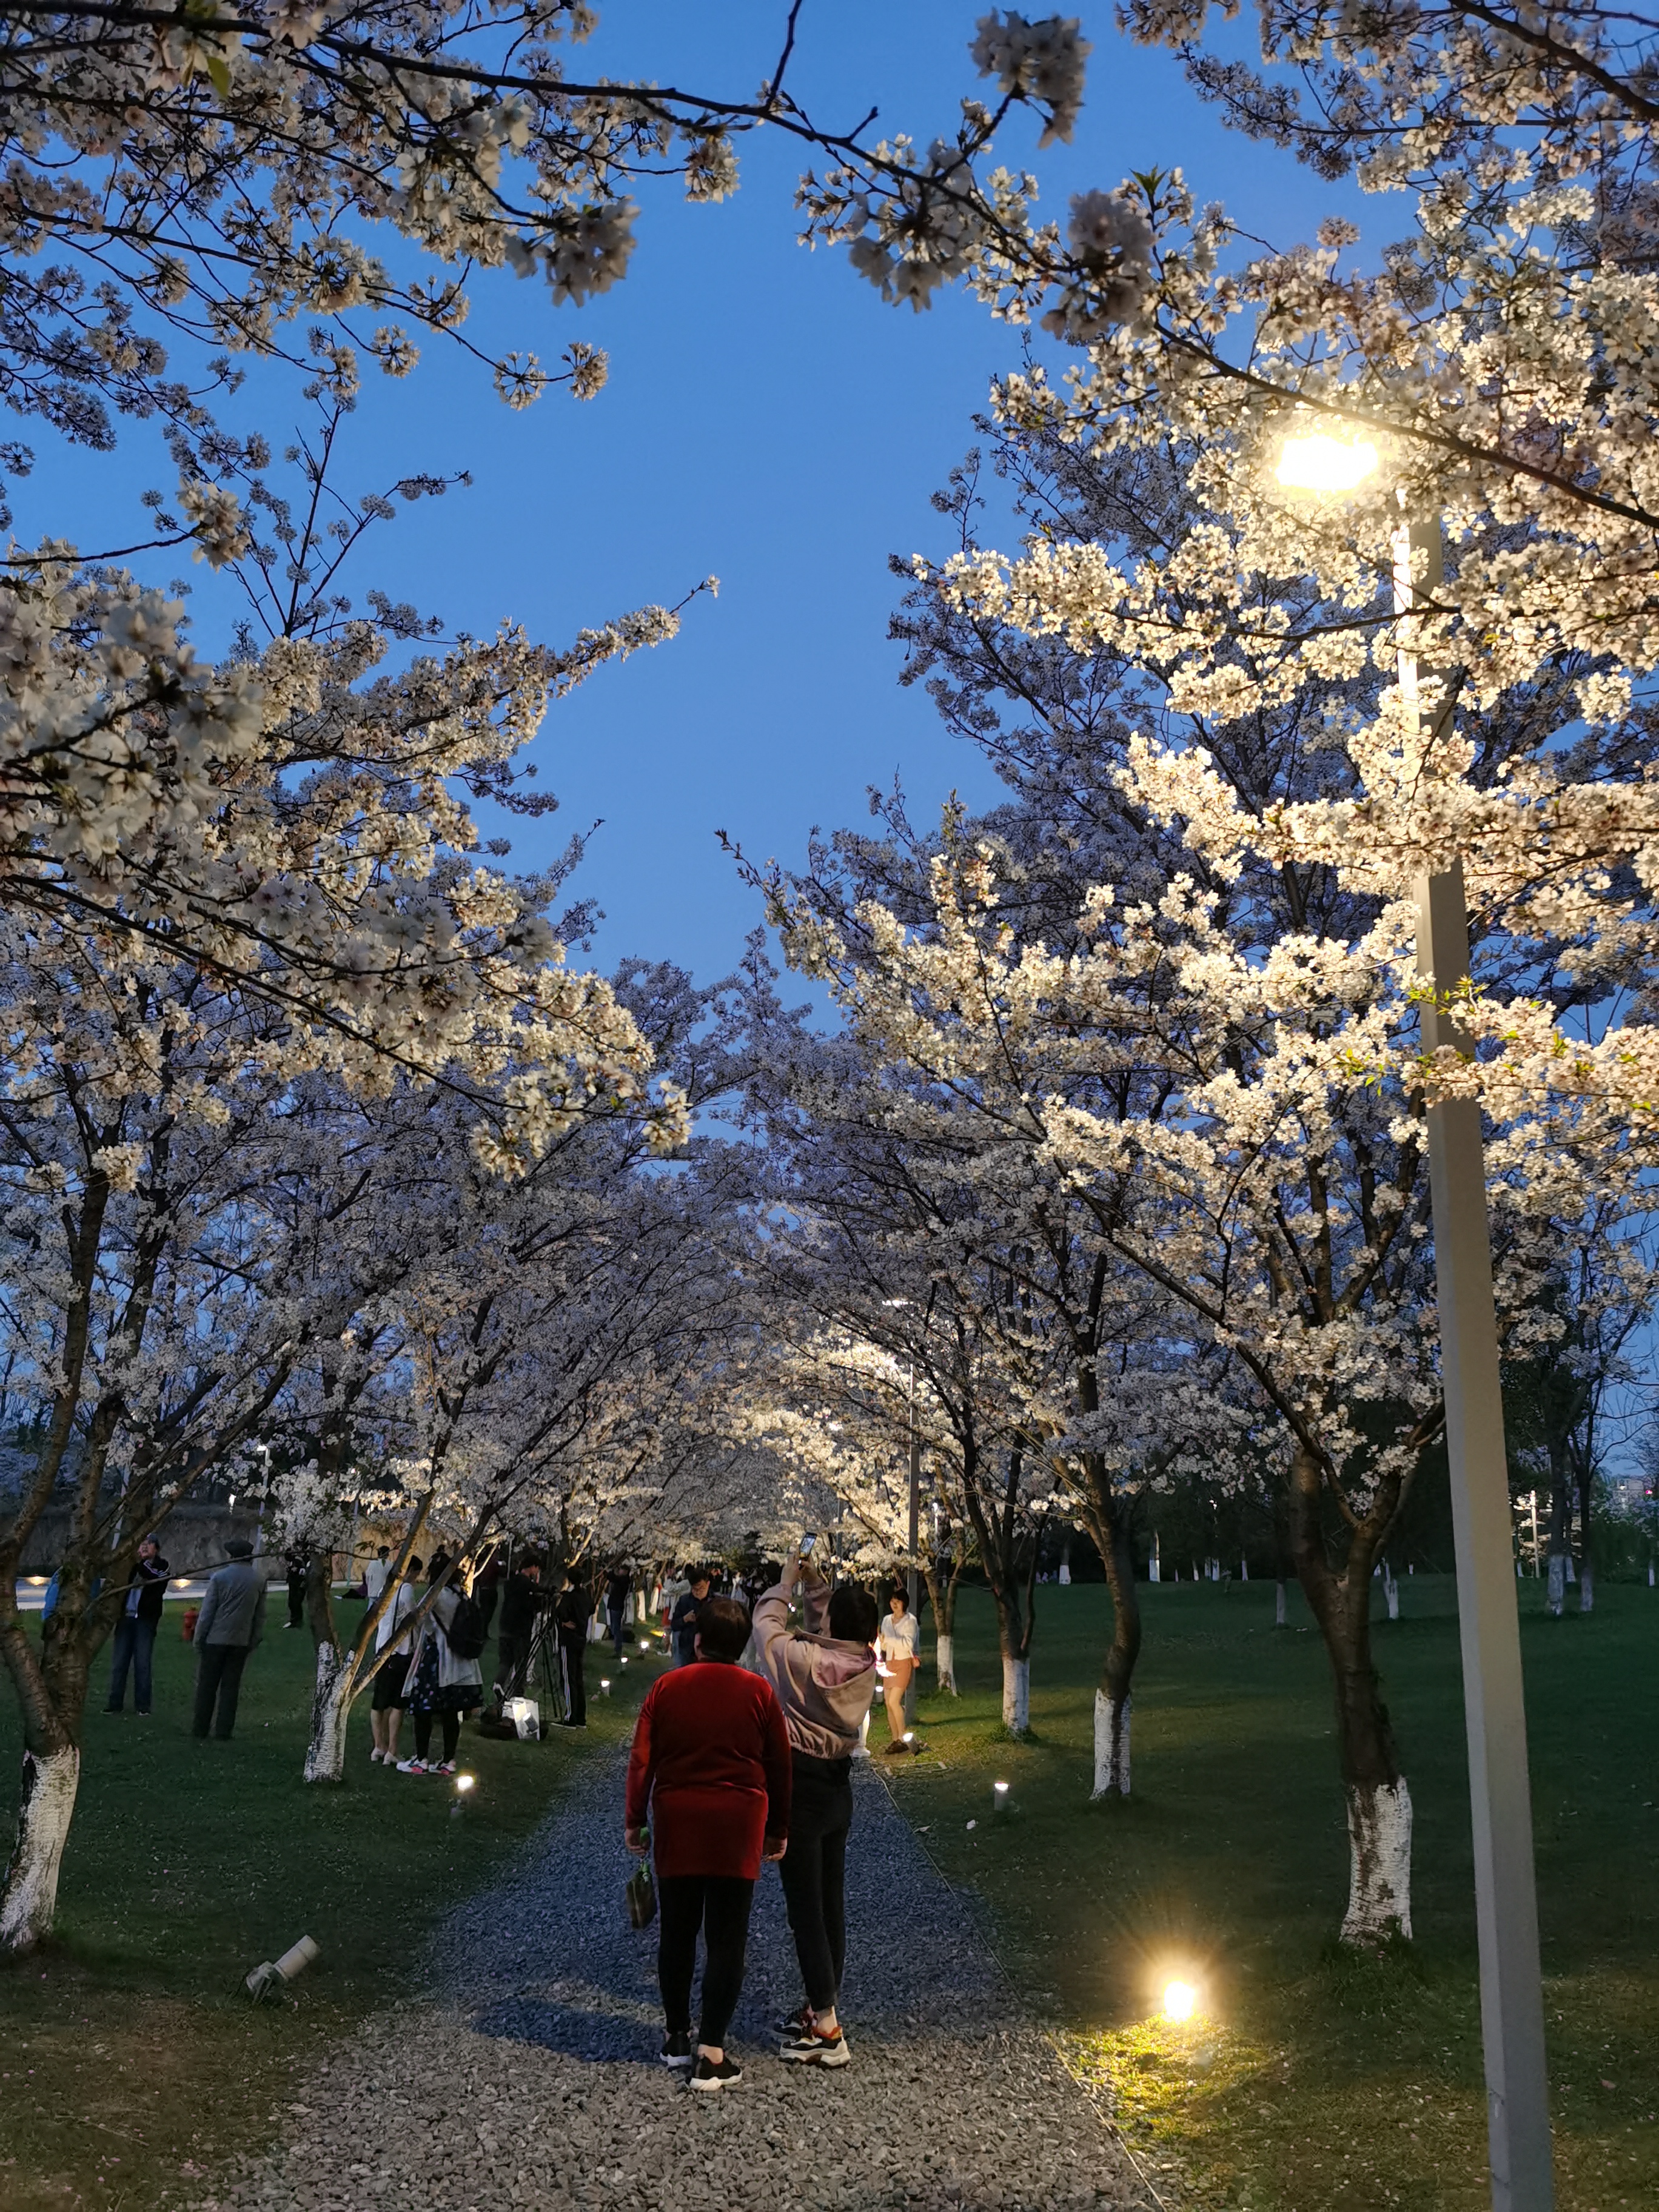 良渚文化艺术中心樱花图片